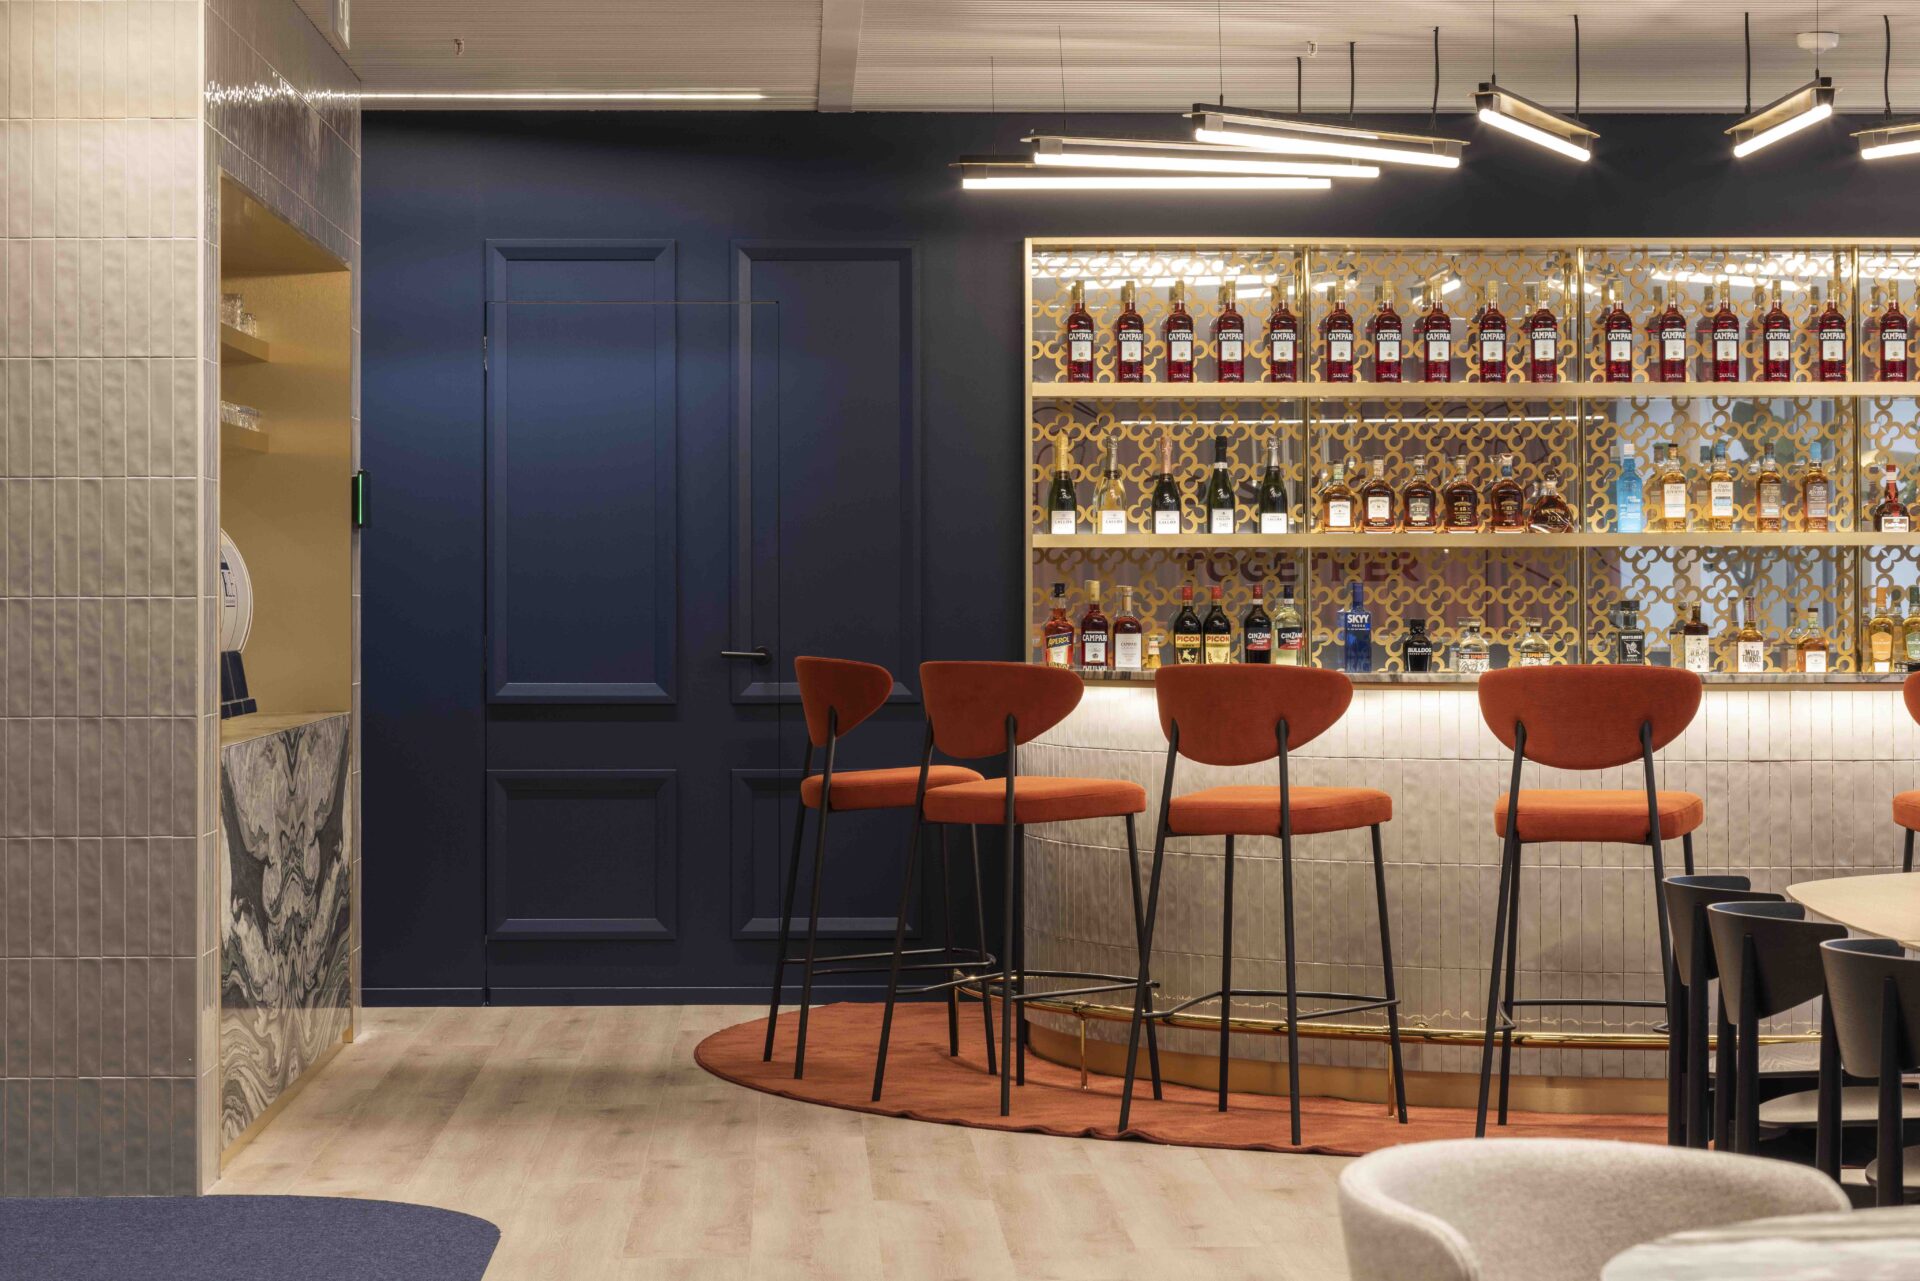 The Campari HQ in Brussels built around an aperitivo bar